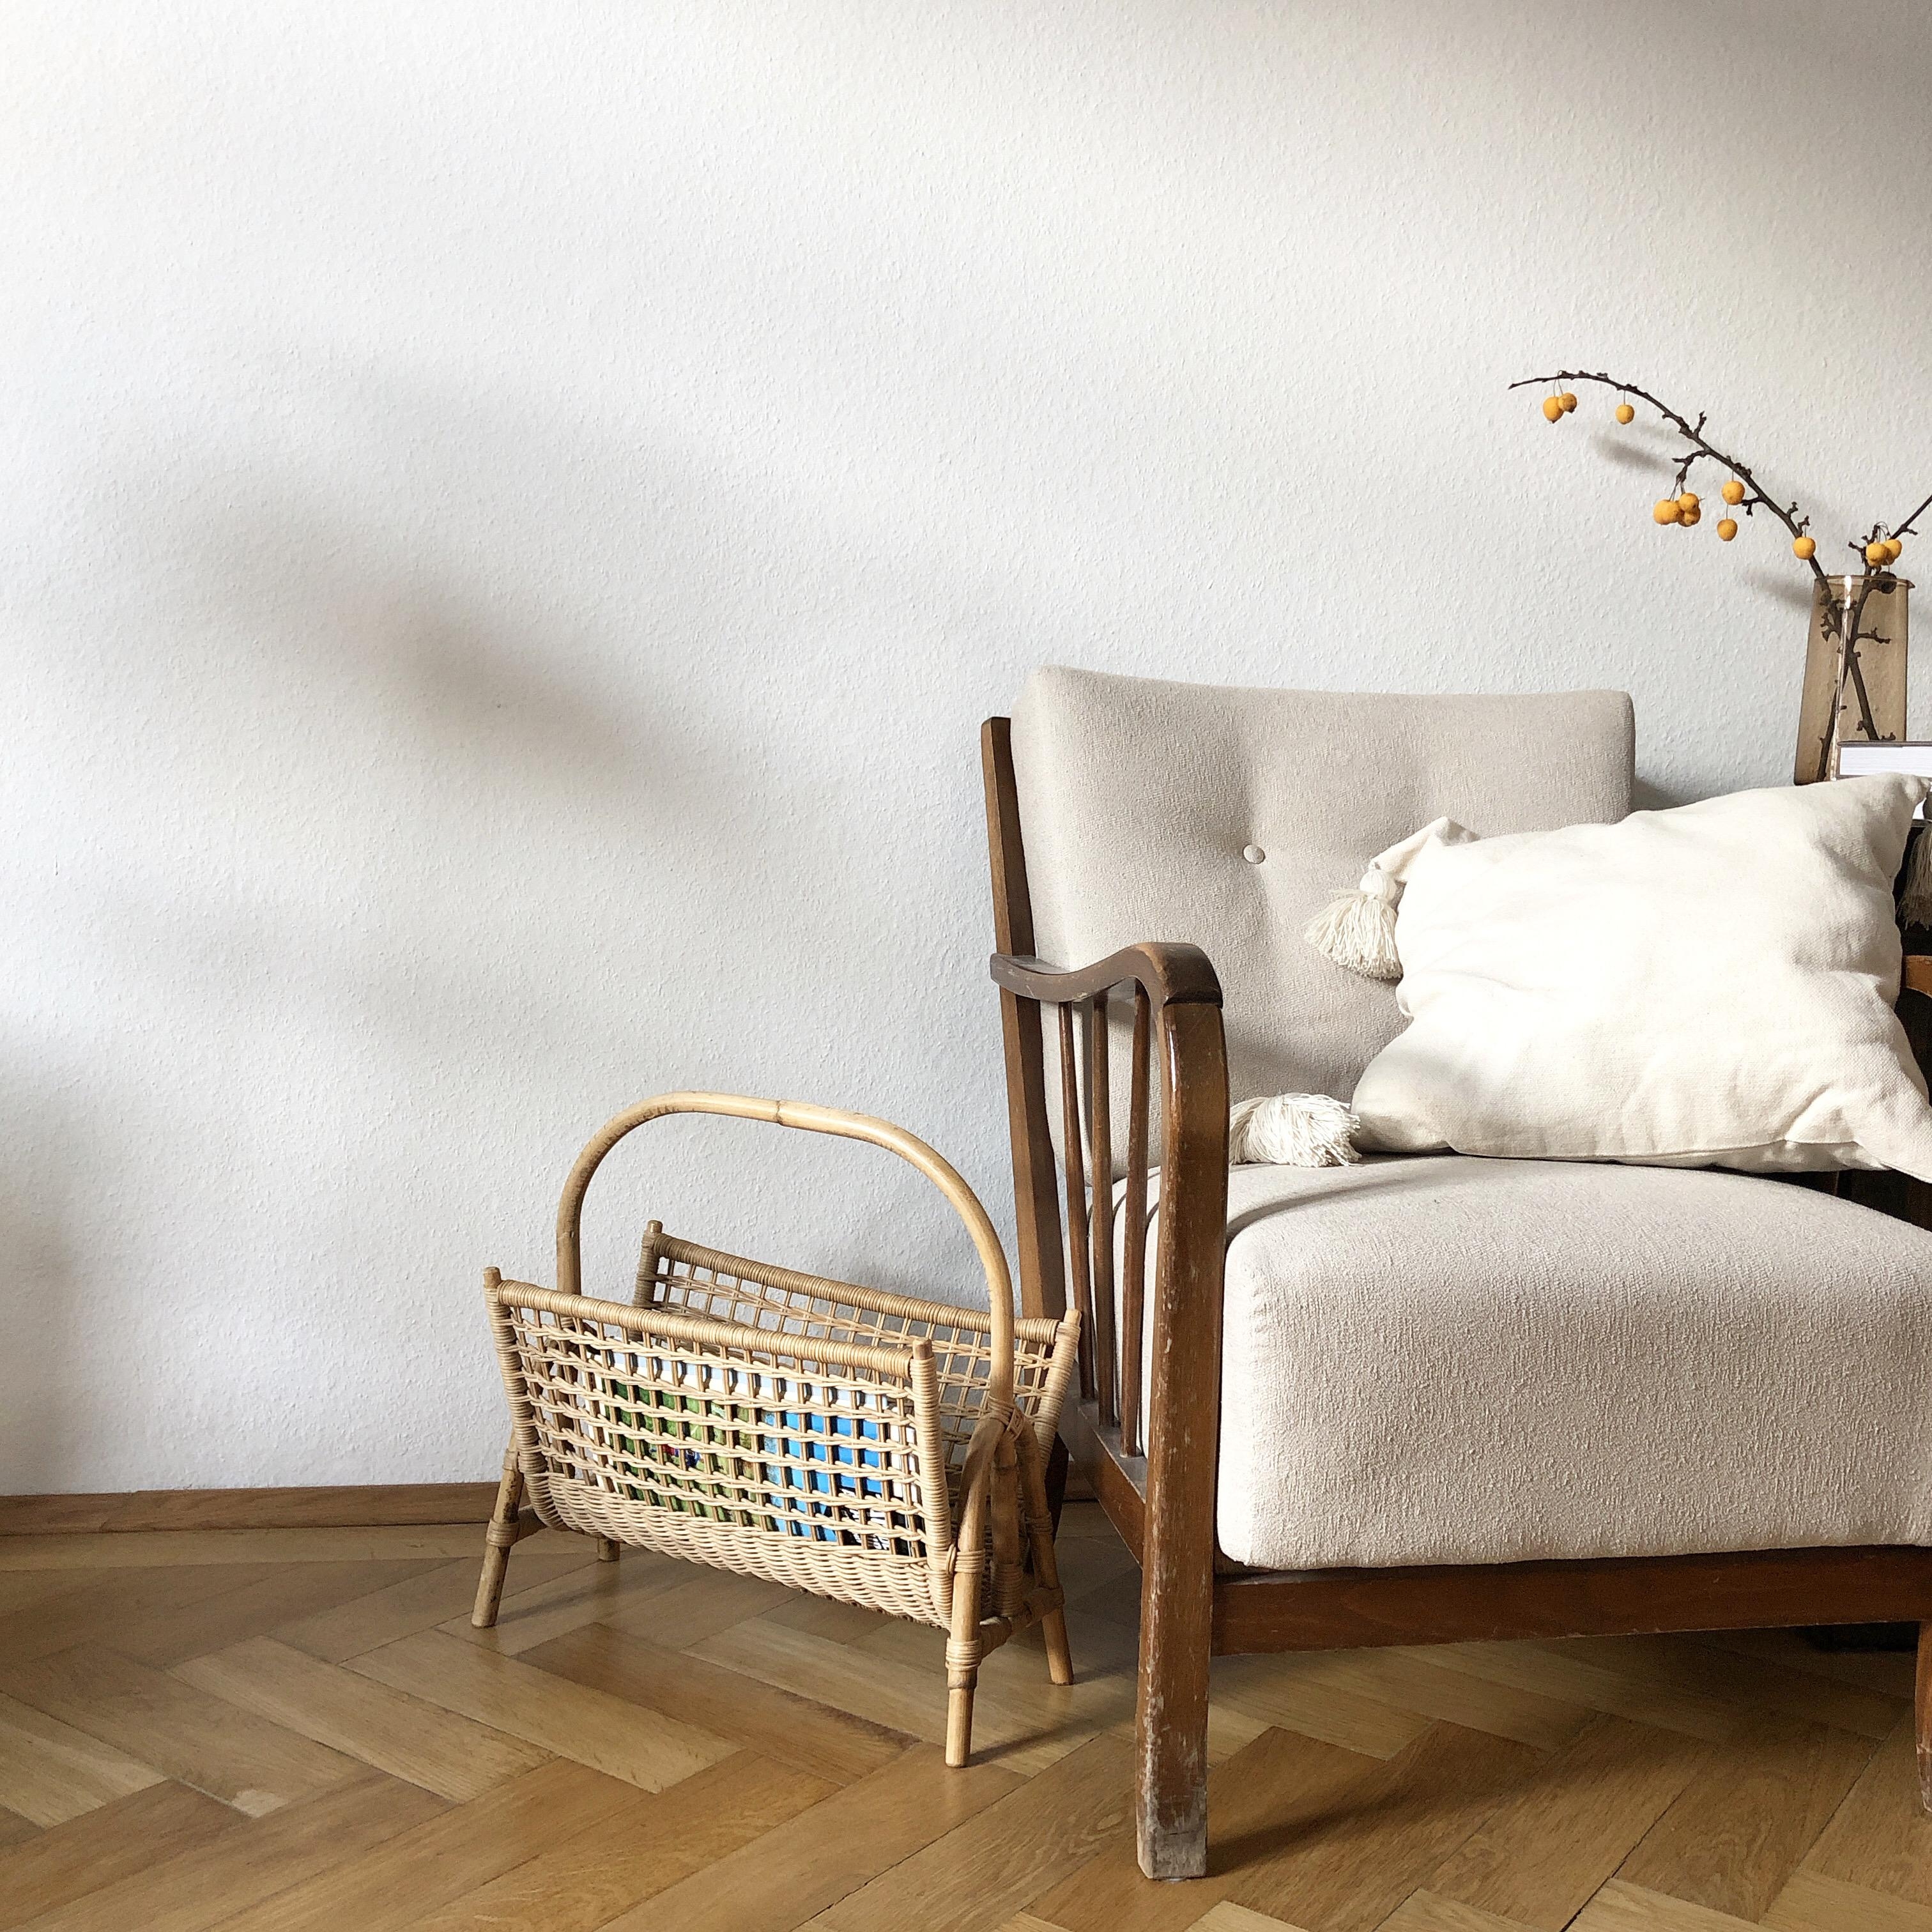 Ein kleiner Ausschnitt aus unserem #wohnzimmer. #sessel #altbau #minimalistisch #scandi